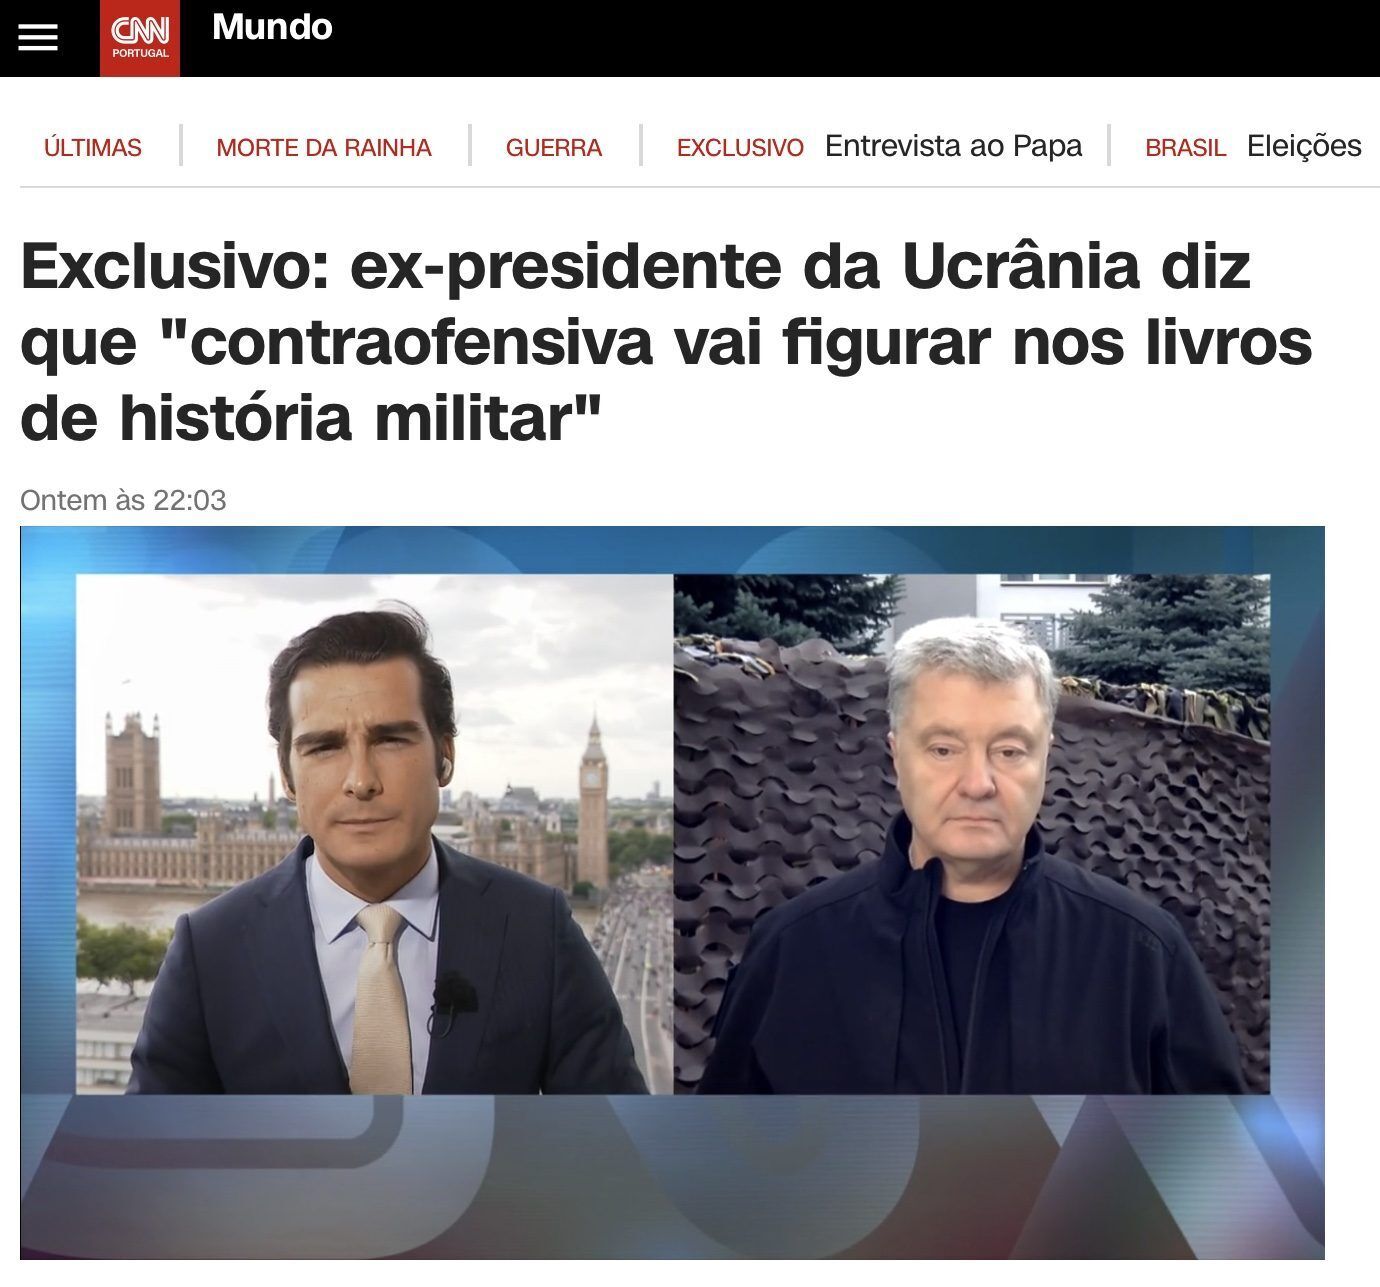 Порошенко на CNN Portugal: Путин больше не может проводить никакие "красные линии" для мира